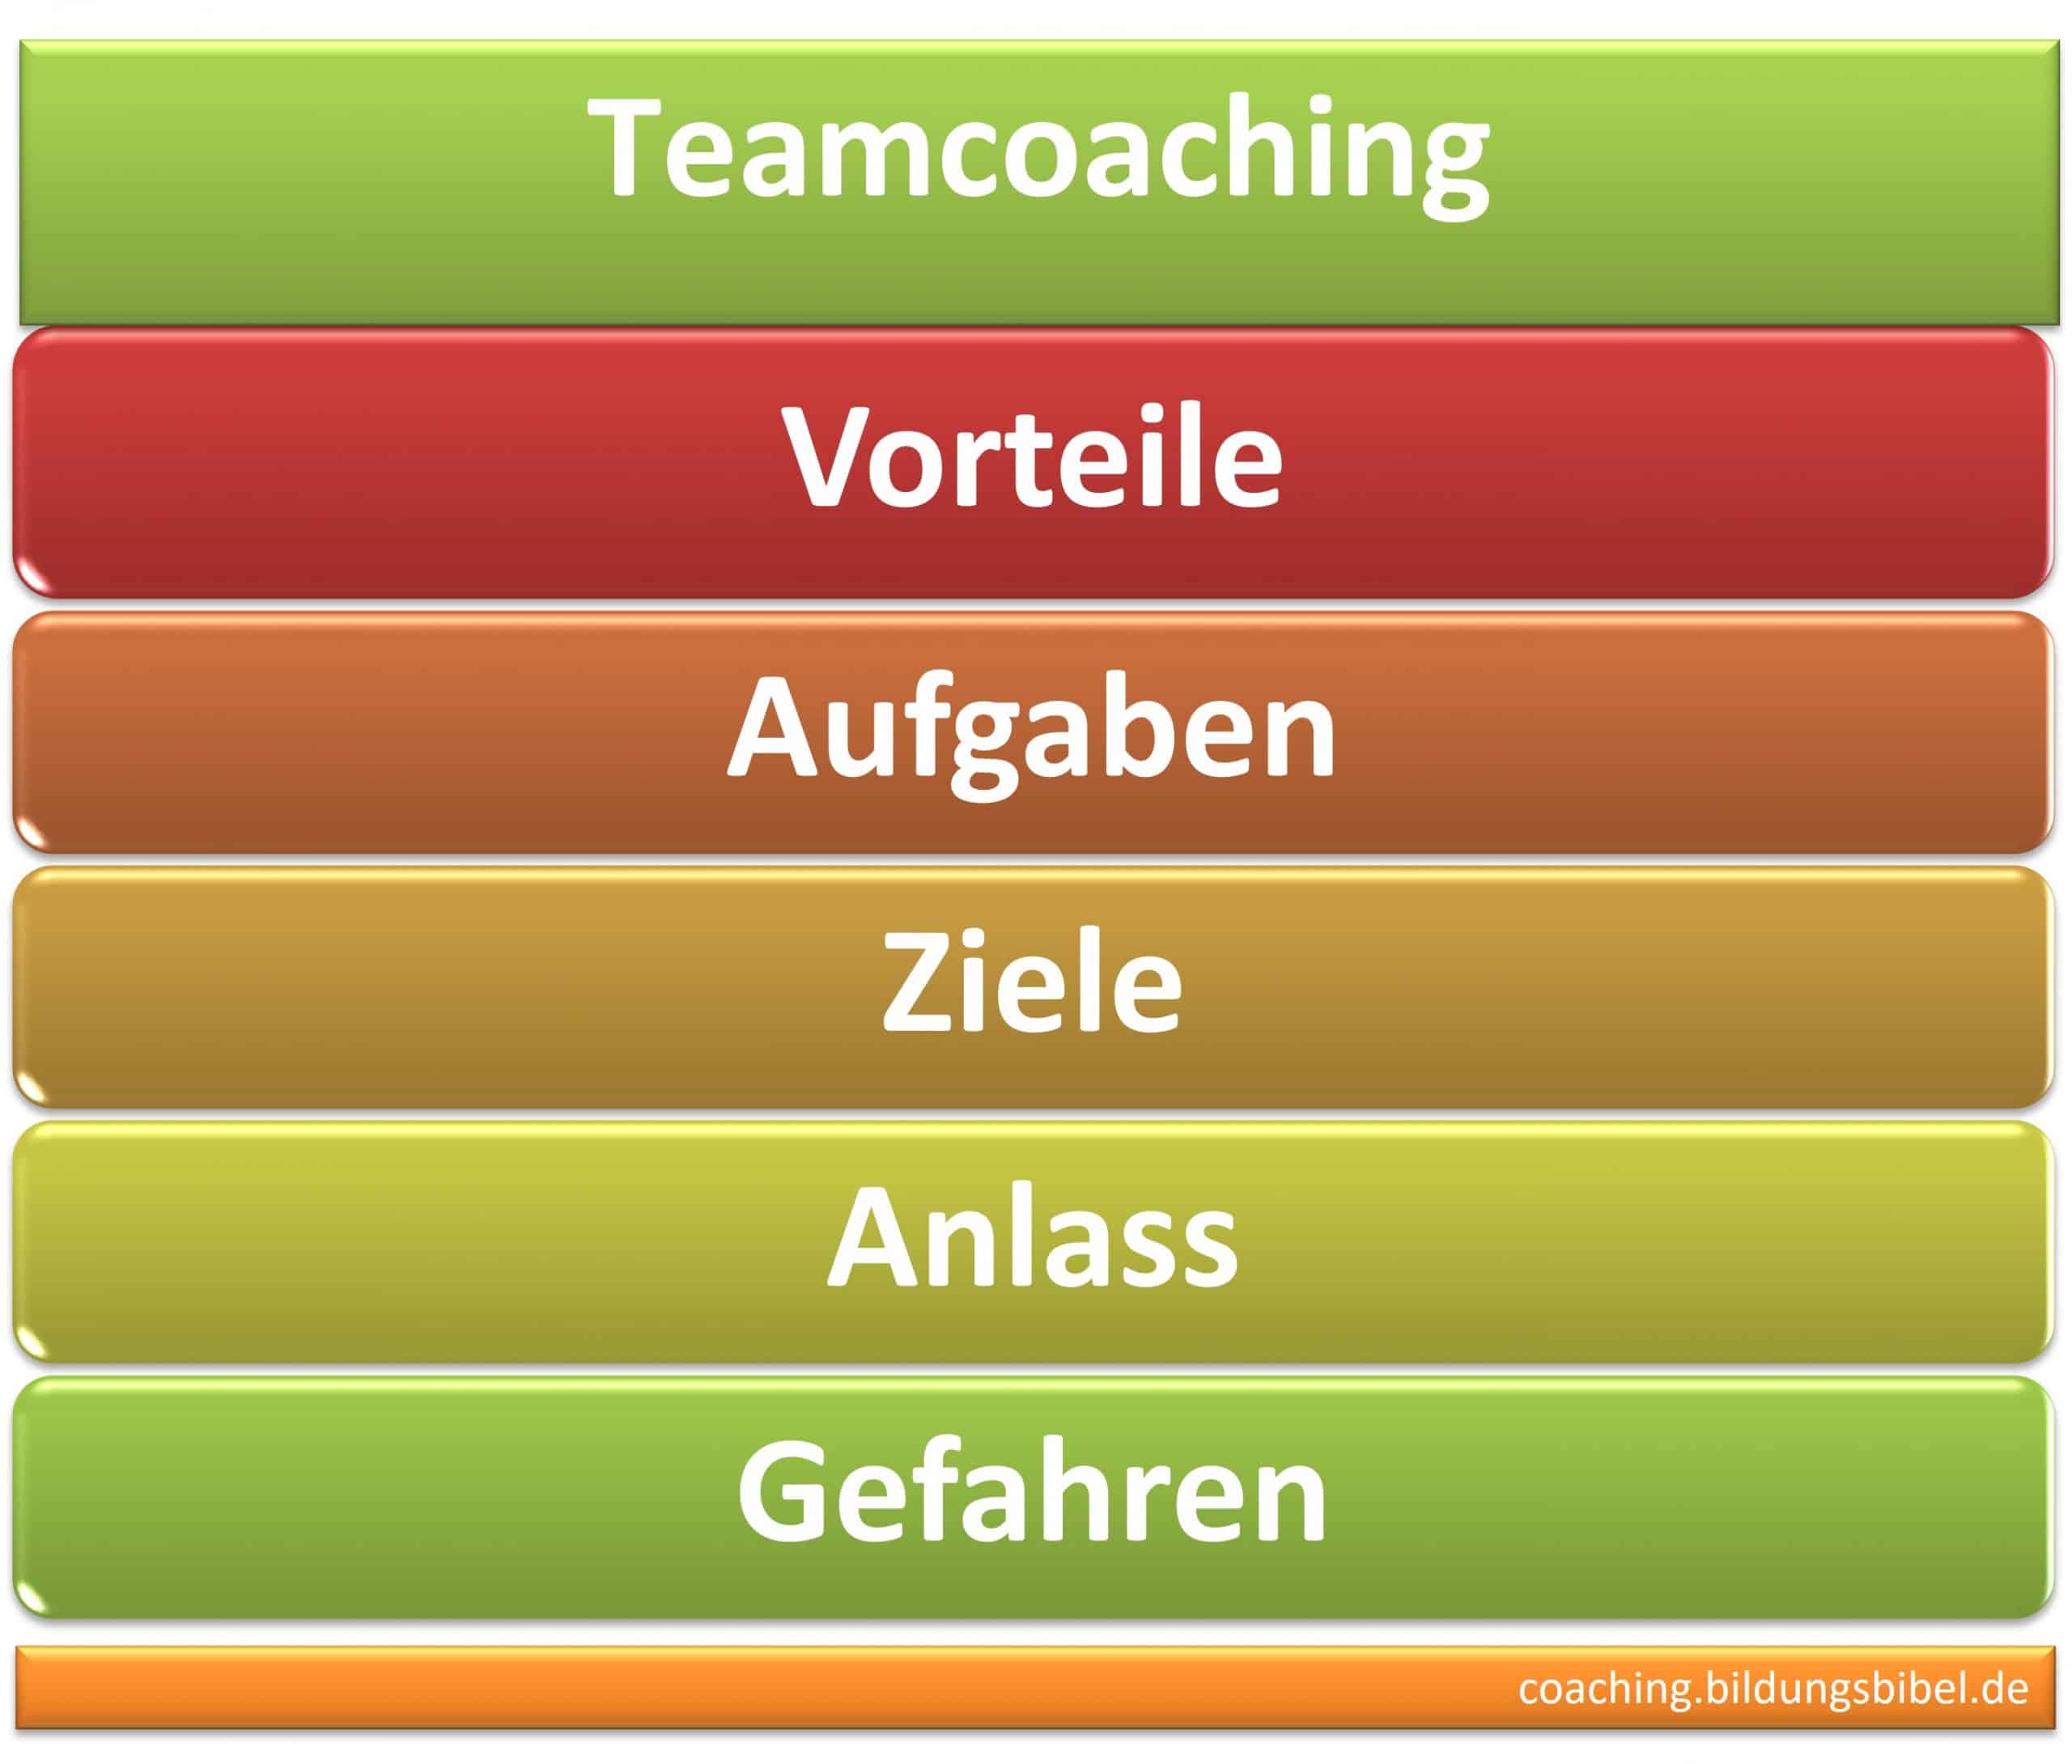 Teamcoaching, Teams coachen, Vorteile, Aufgaben, Ziele und Anlass, Gefahren, Kosten, Coach für Teams, Kommunikation, Was ist Teamcoaching?